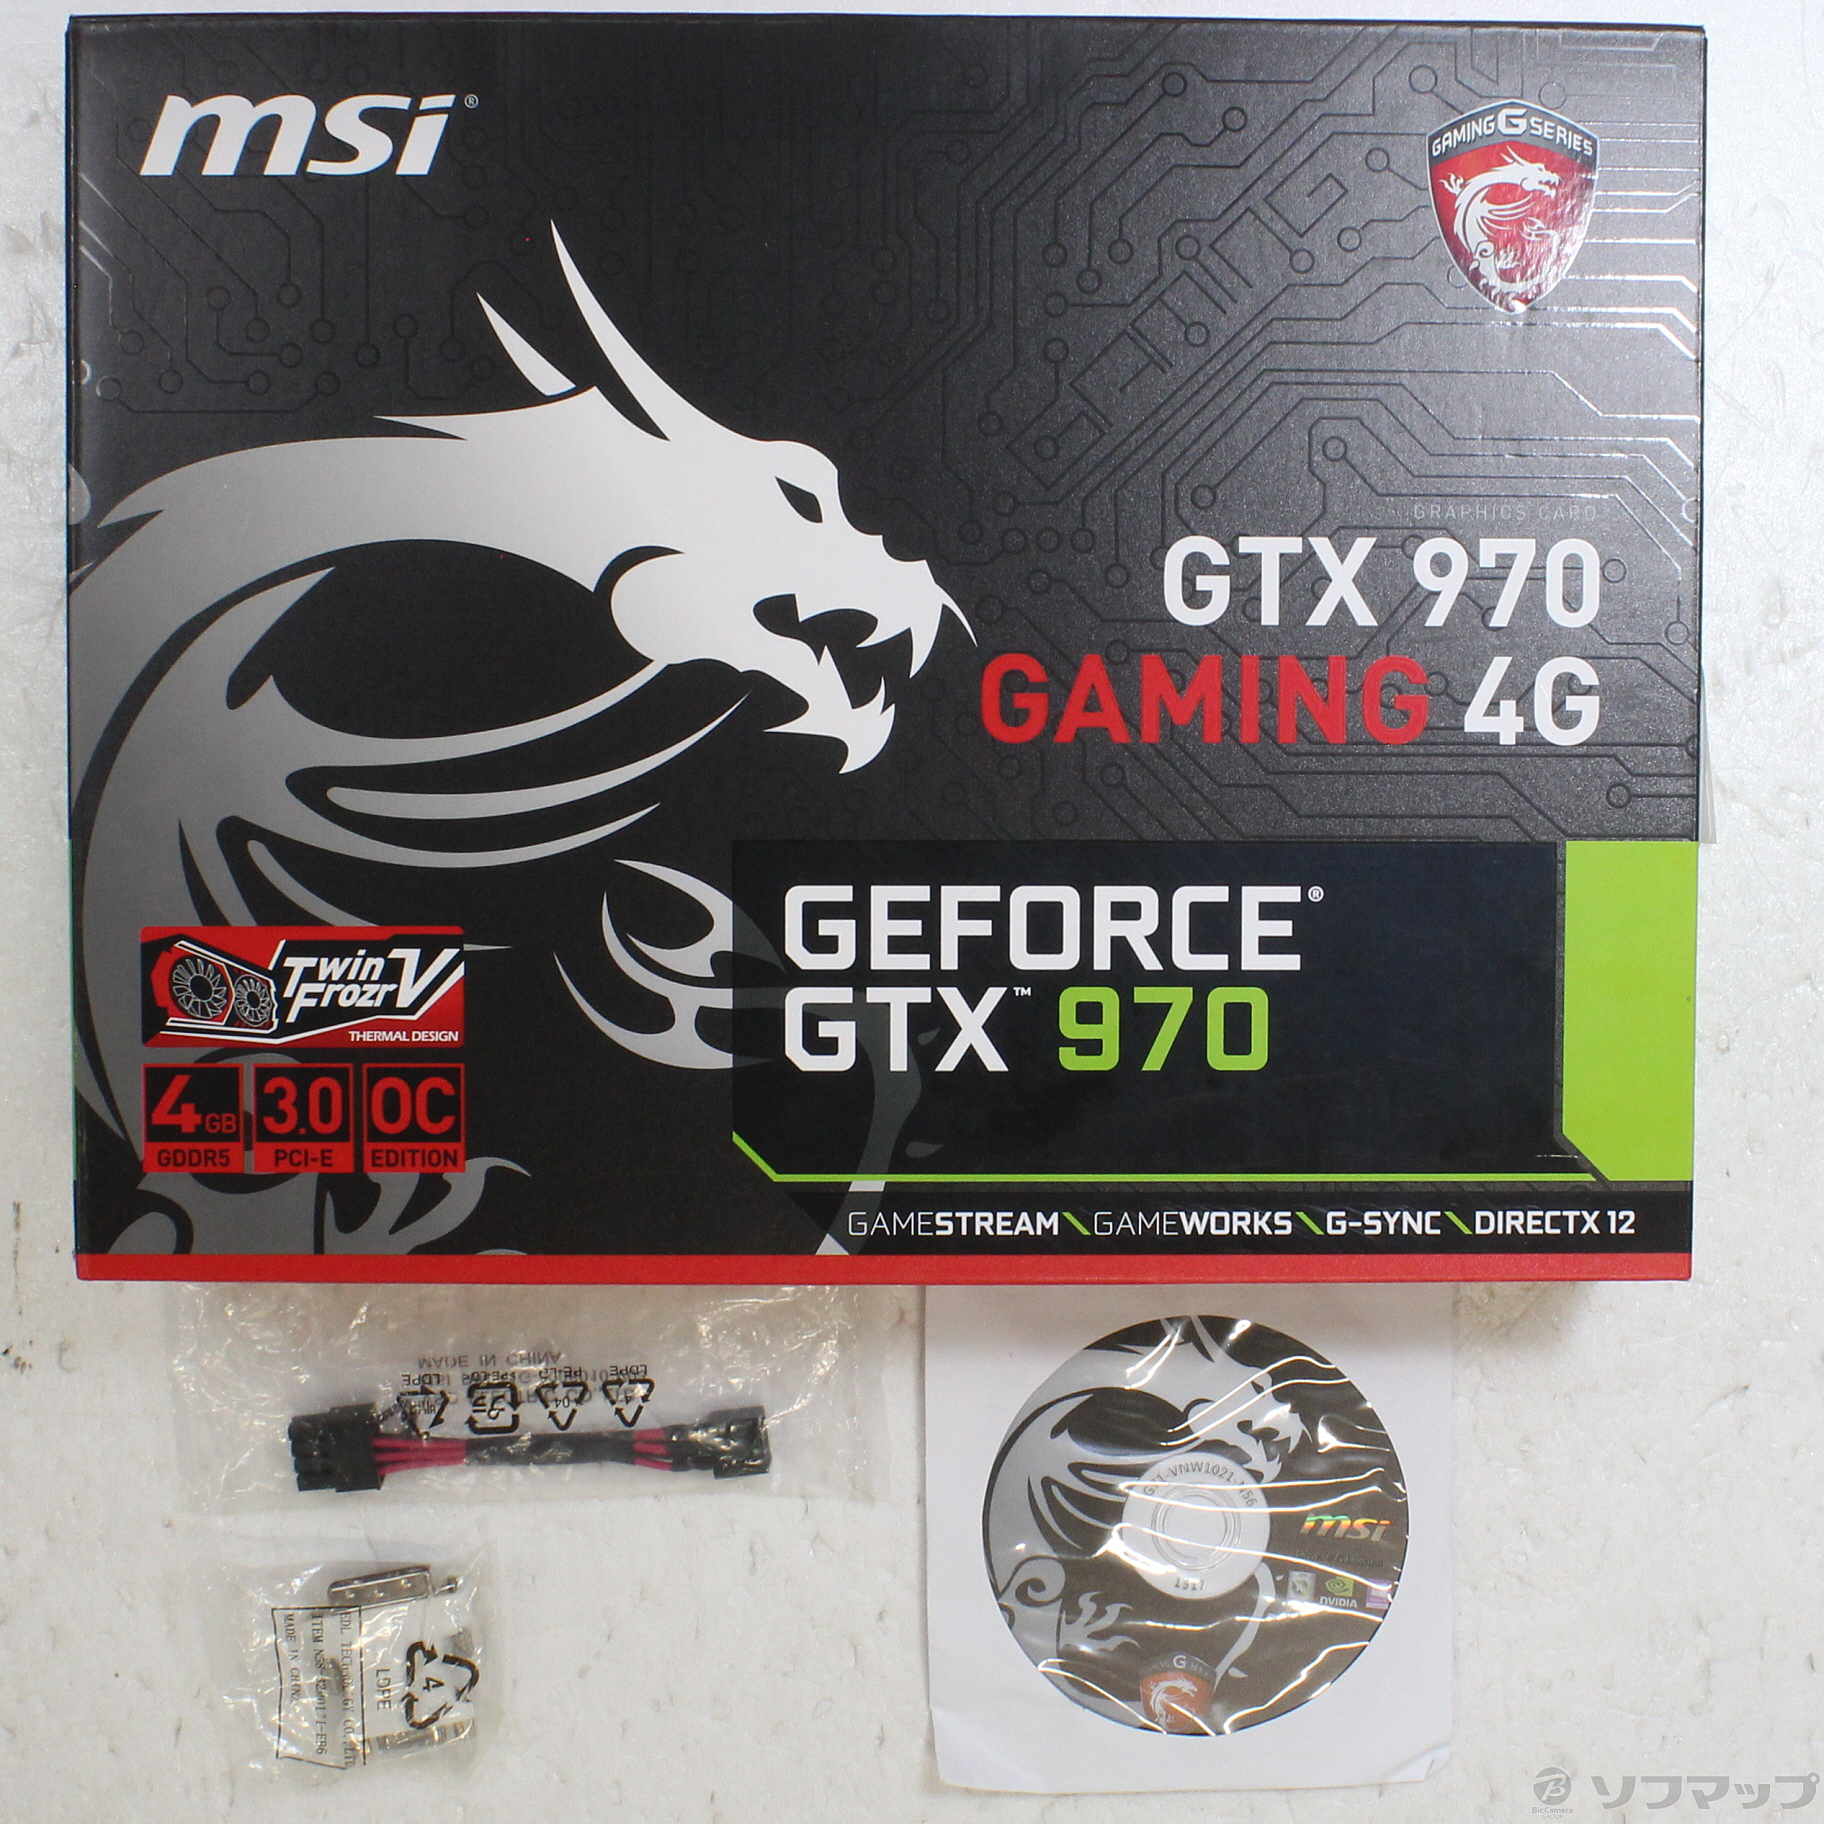 GTX 970 GAMING 4G